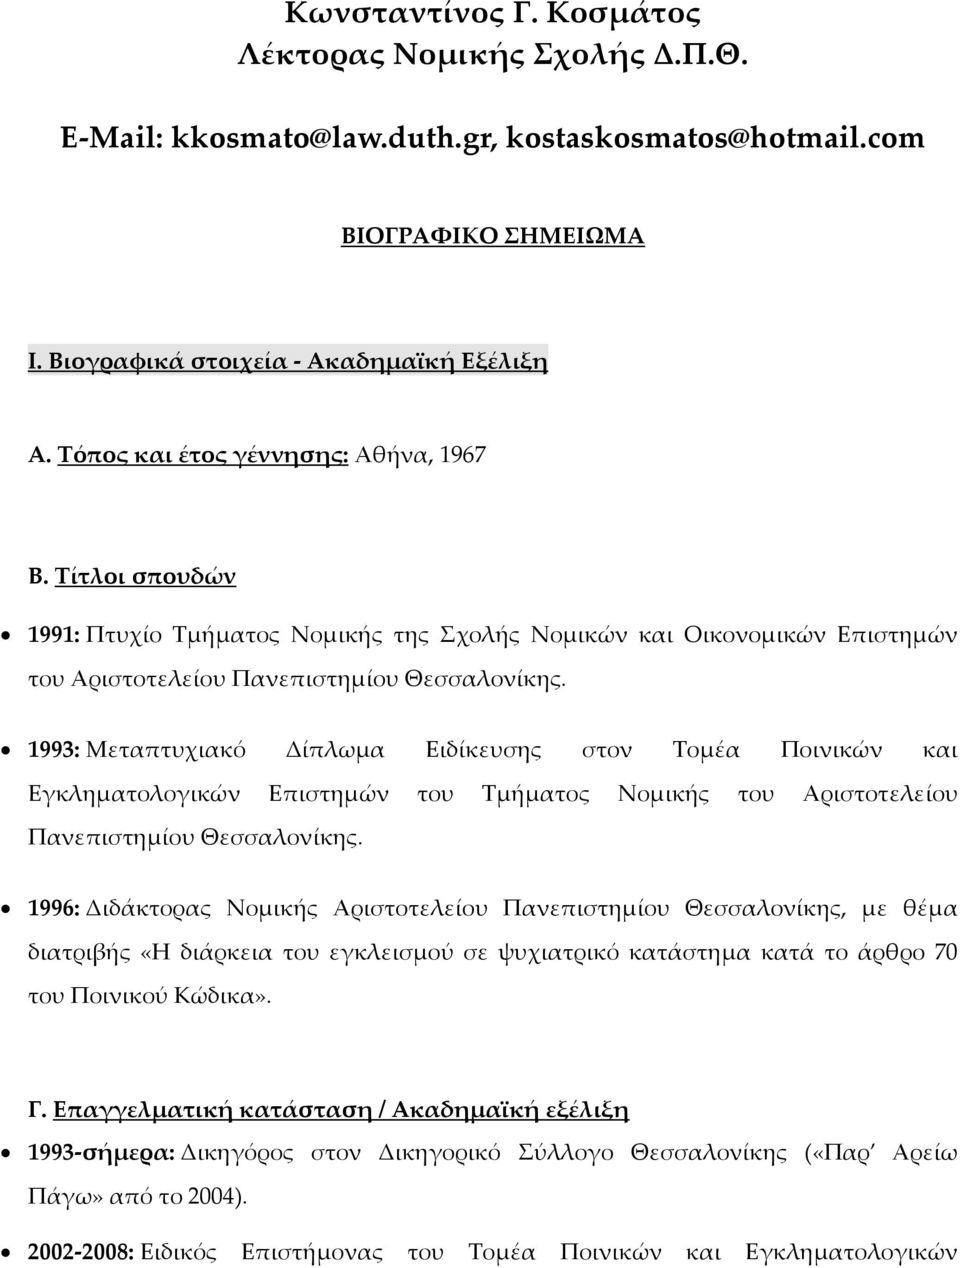 1993: Μεταπτυχιακό Δίπλωμα Ειδίκευσης στον Σομέα Ποινικών και Εγκληματολογικών Επιστημών του Σμήματος Νομικής του Αριστοτελείου Πανεπιστημίου Θεσσαλονίκης.